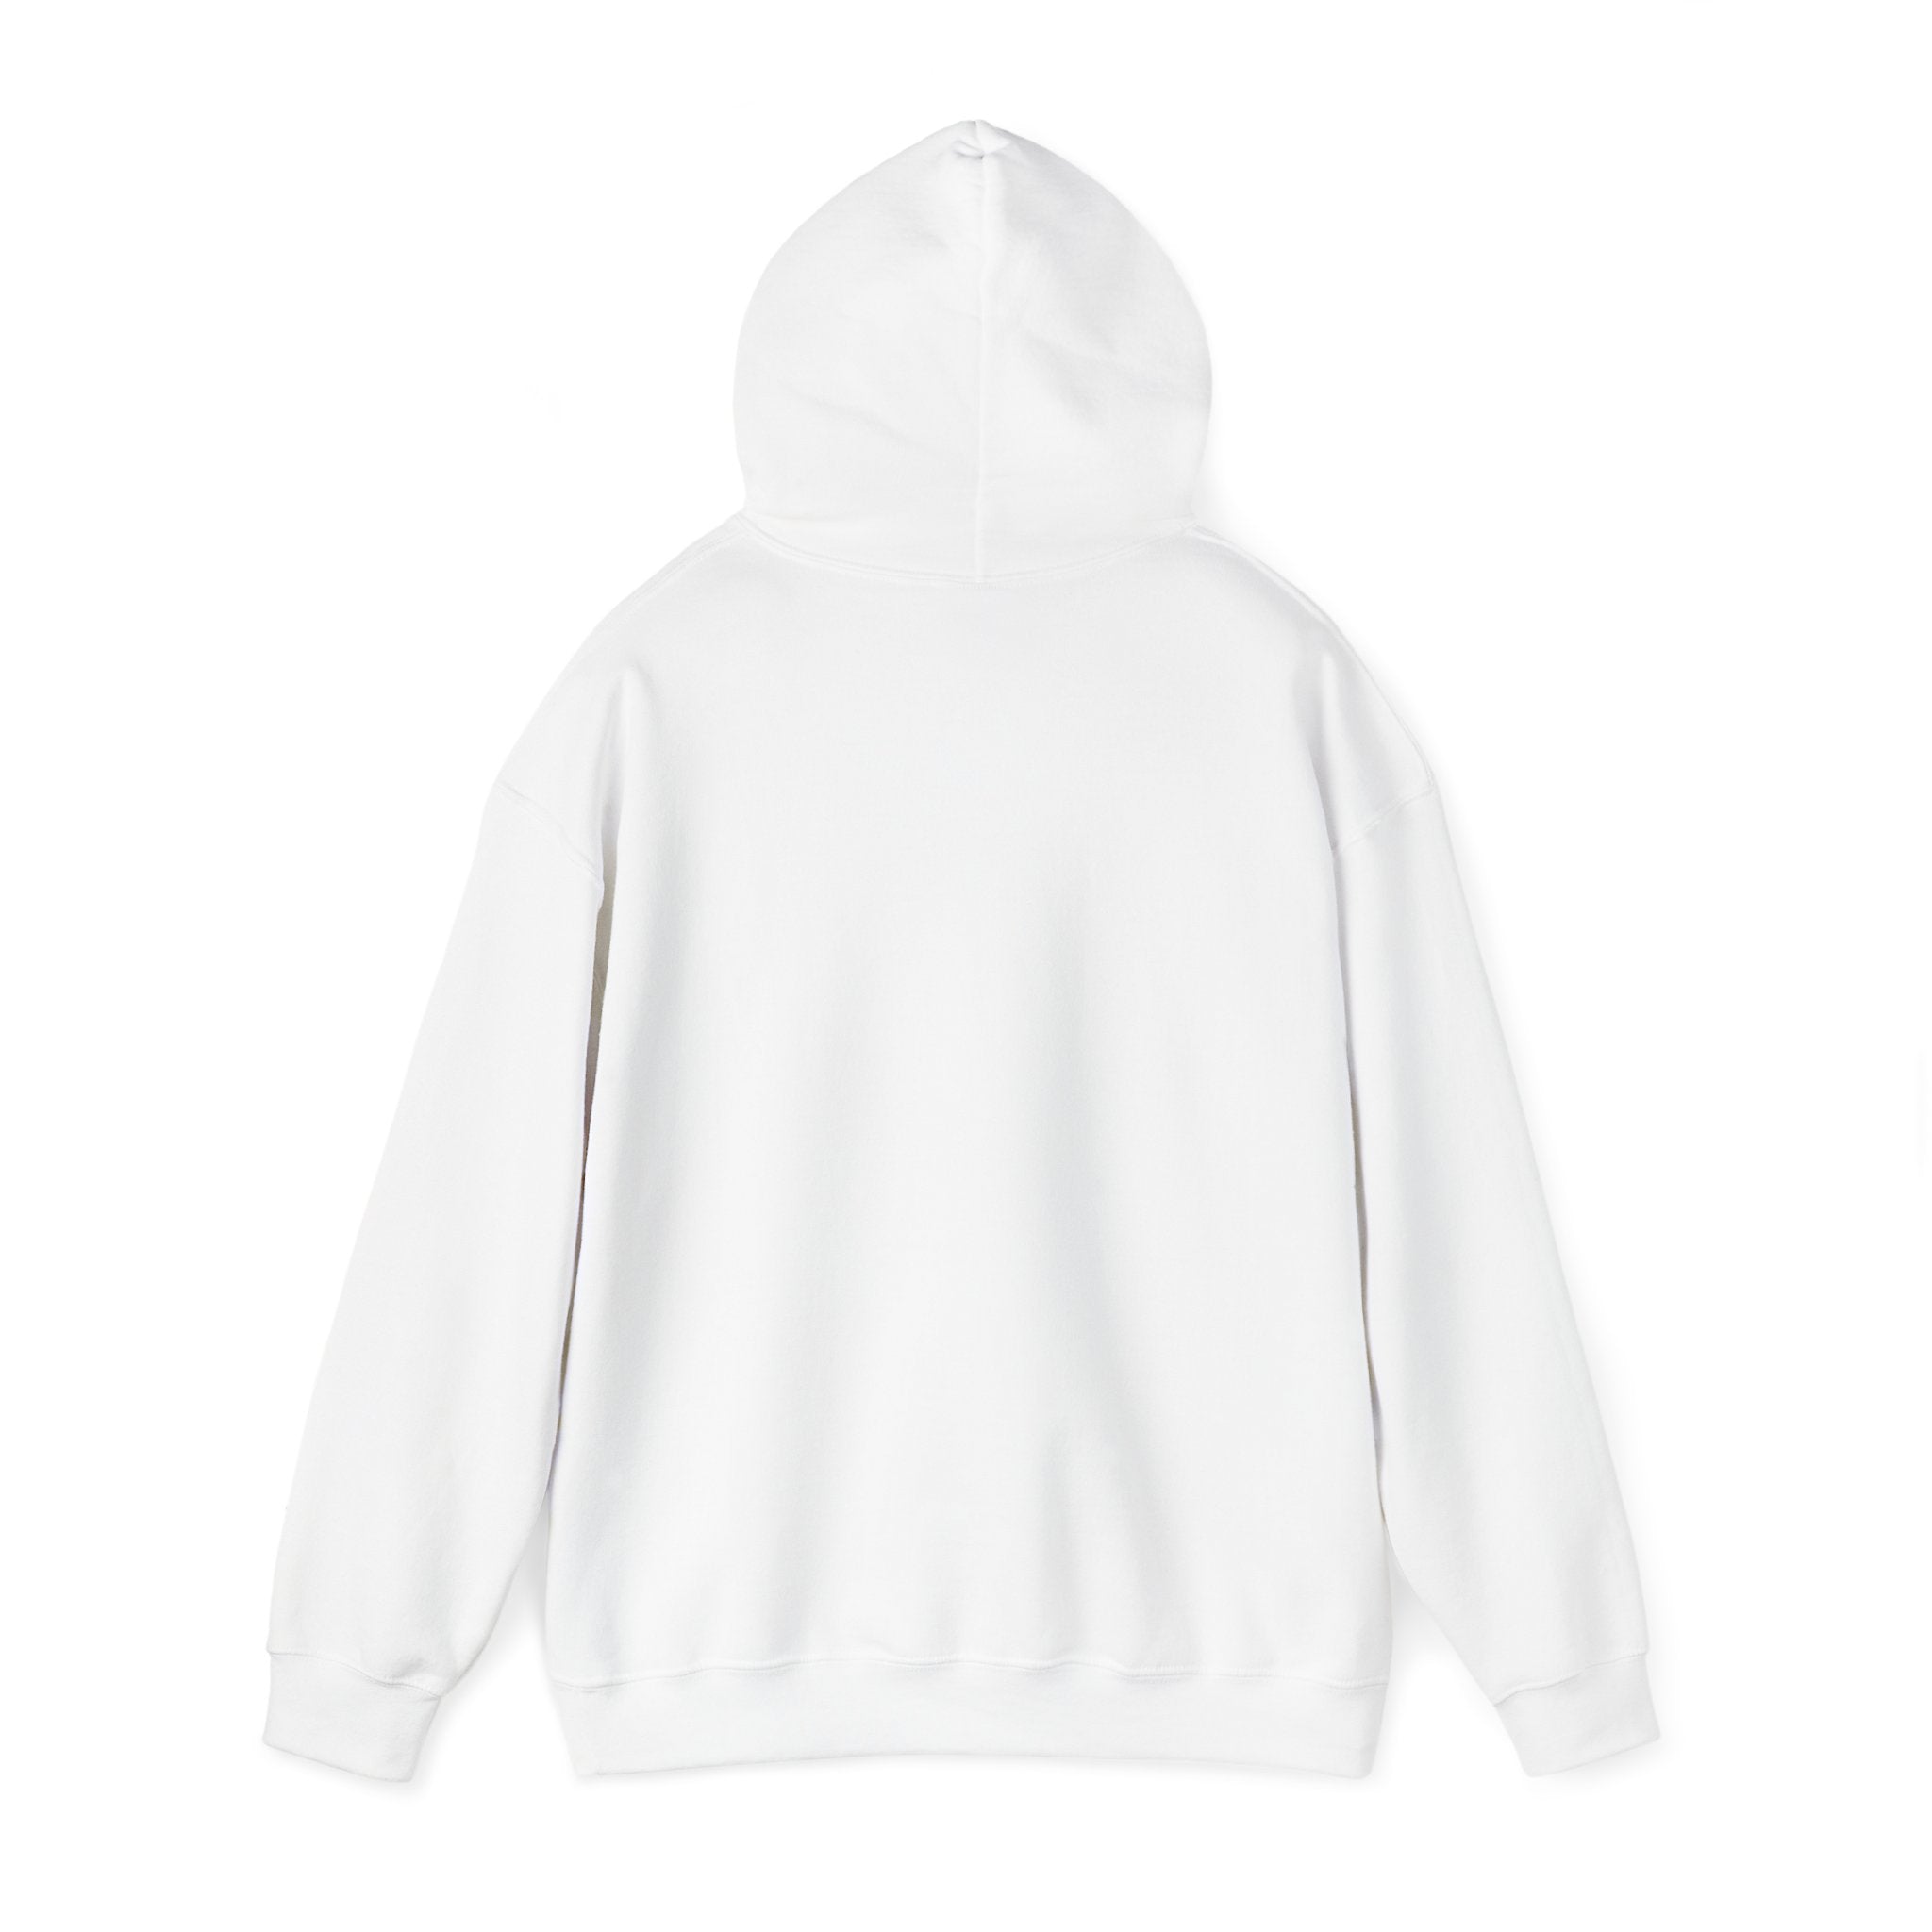 Ba-Co-N - Hooded Sweatshirt